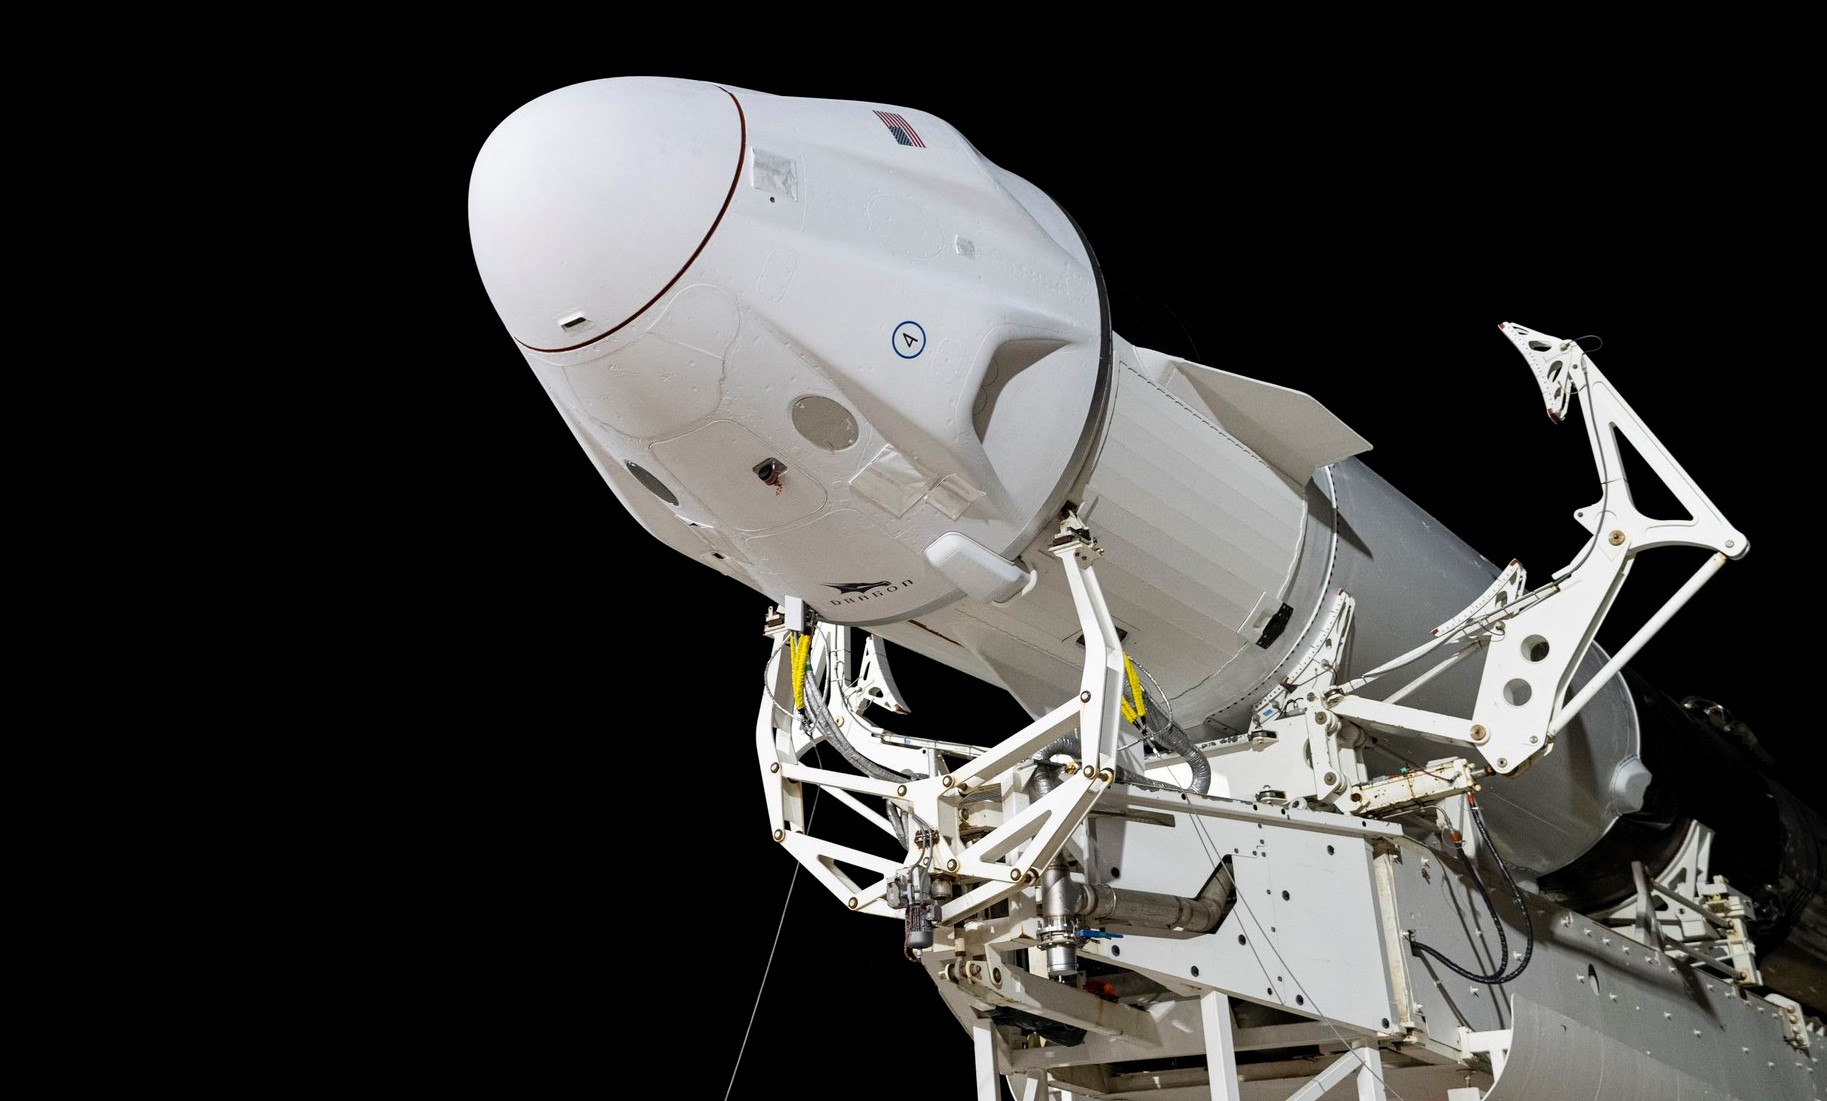 Следующий запуск космонавта SpaceX Crew Dragon переносится на апрель